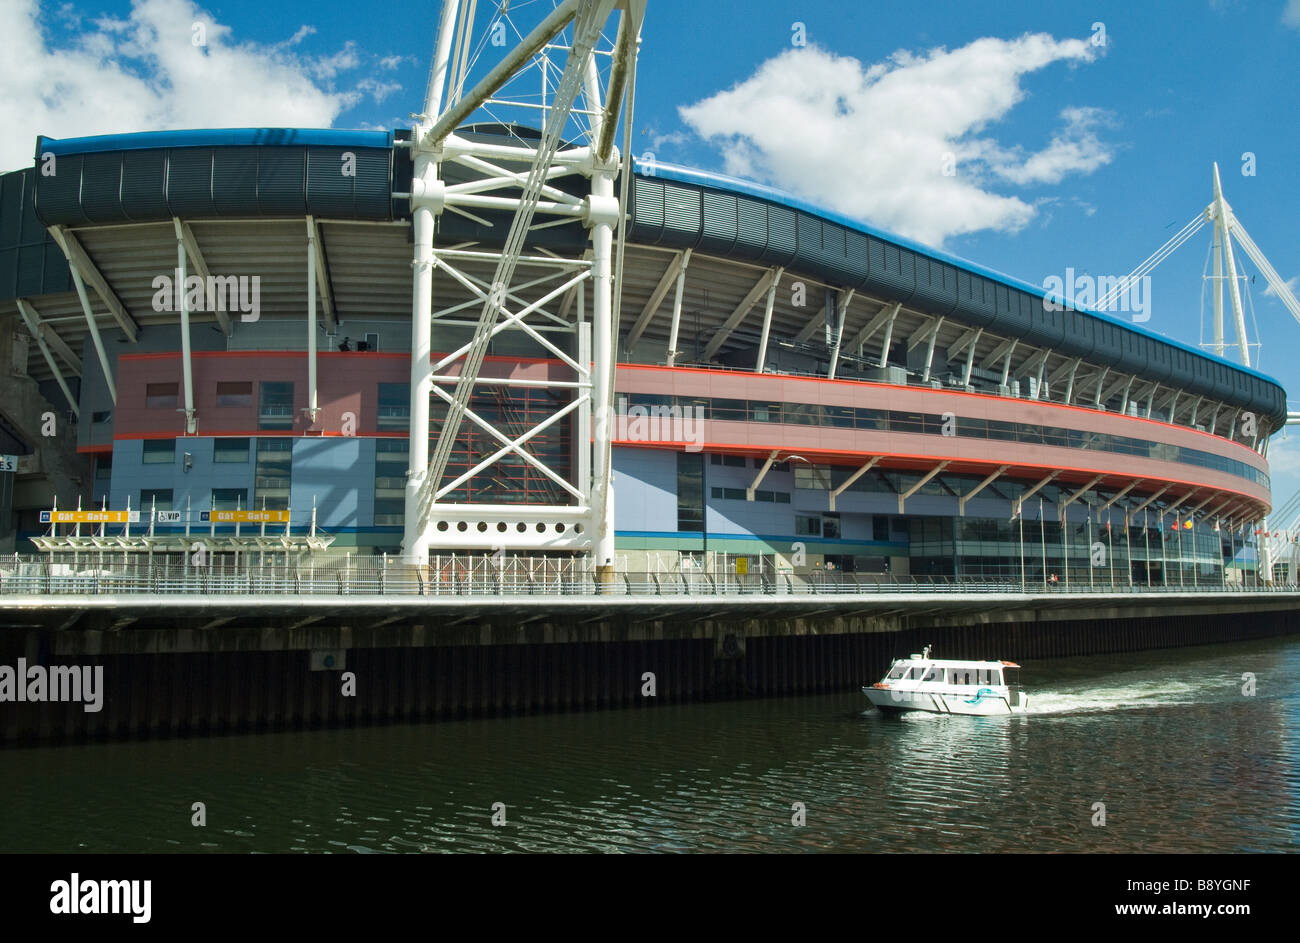 Wales Millennium Stadium in Cardiff am Ufer des River-Taff, zeigt ein Flussschiff oder den Fluss bus Stockfoto